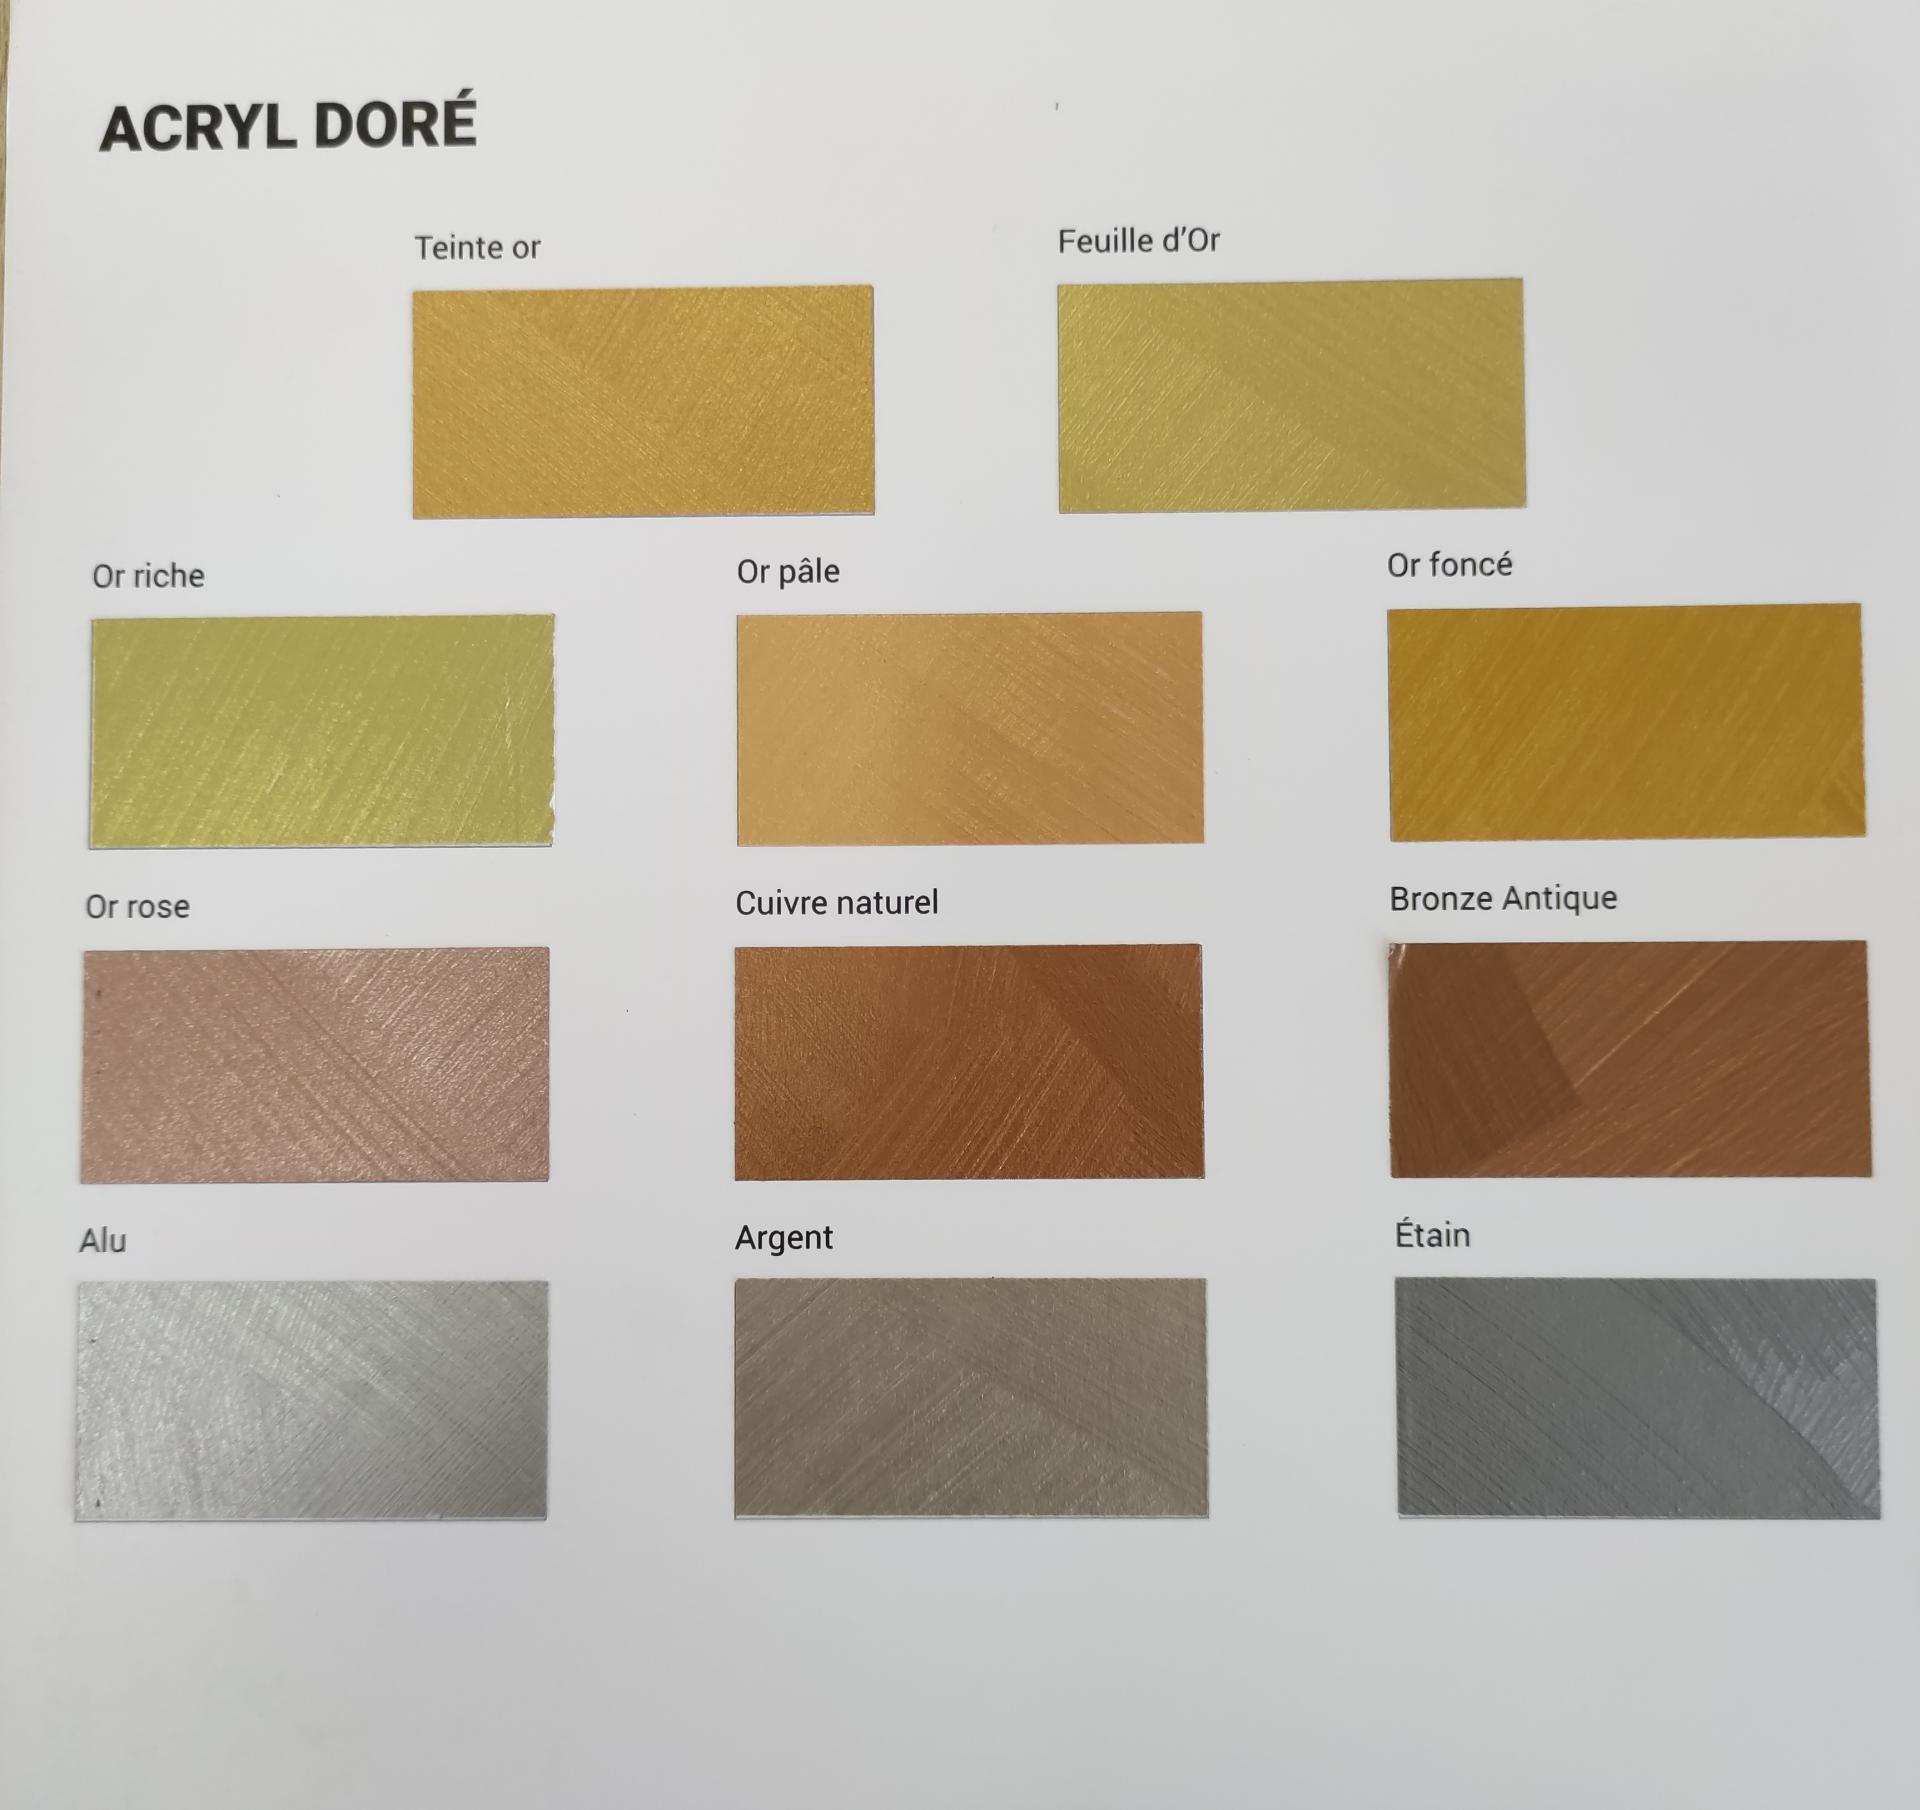 Déclinaison de Aérosol dorure - différents coloris disponibles